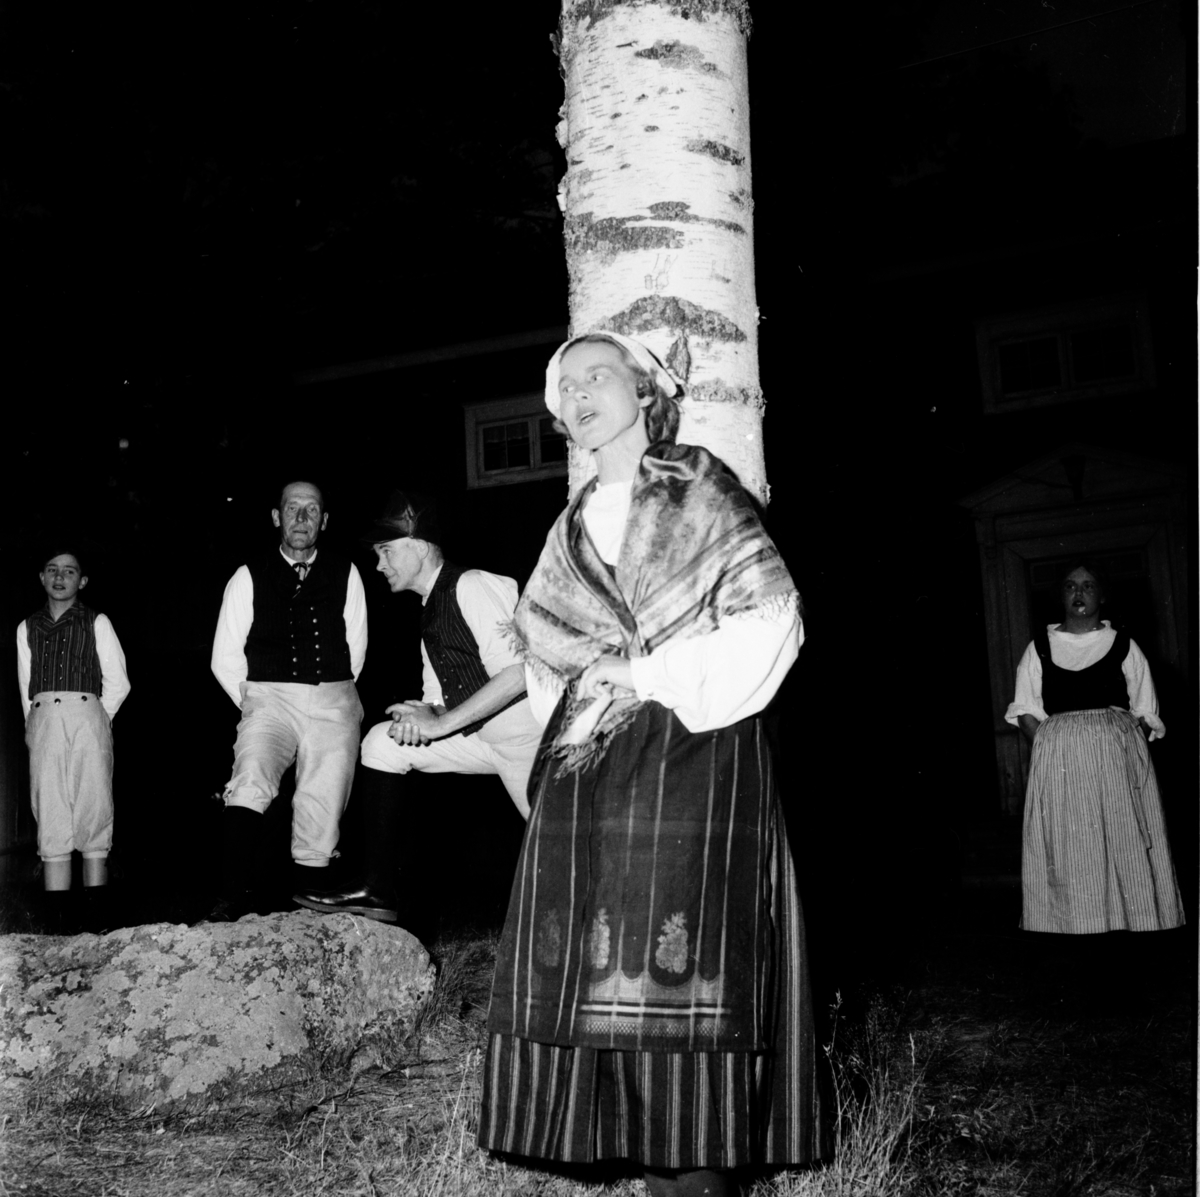 "Gästgivars" på Fornhemmet i Arbrå juli 1958. Kvinnan på bilden heter Greta Ericsson född Persson.